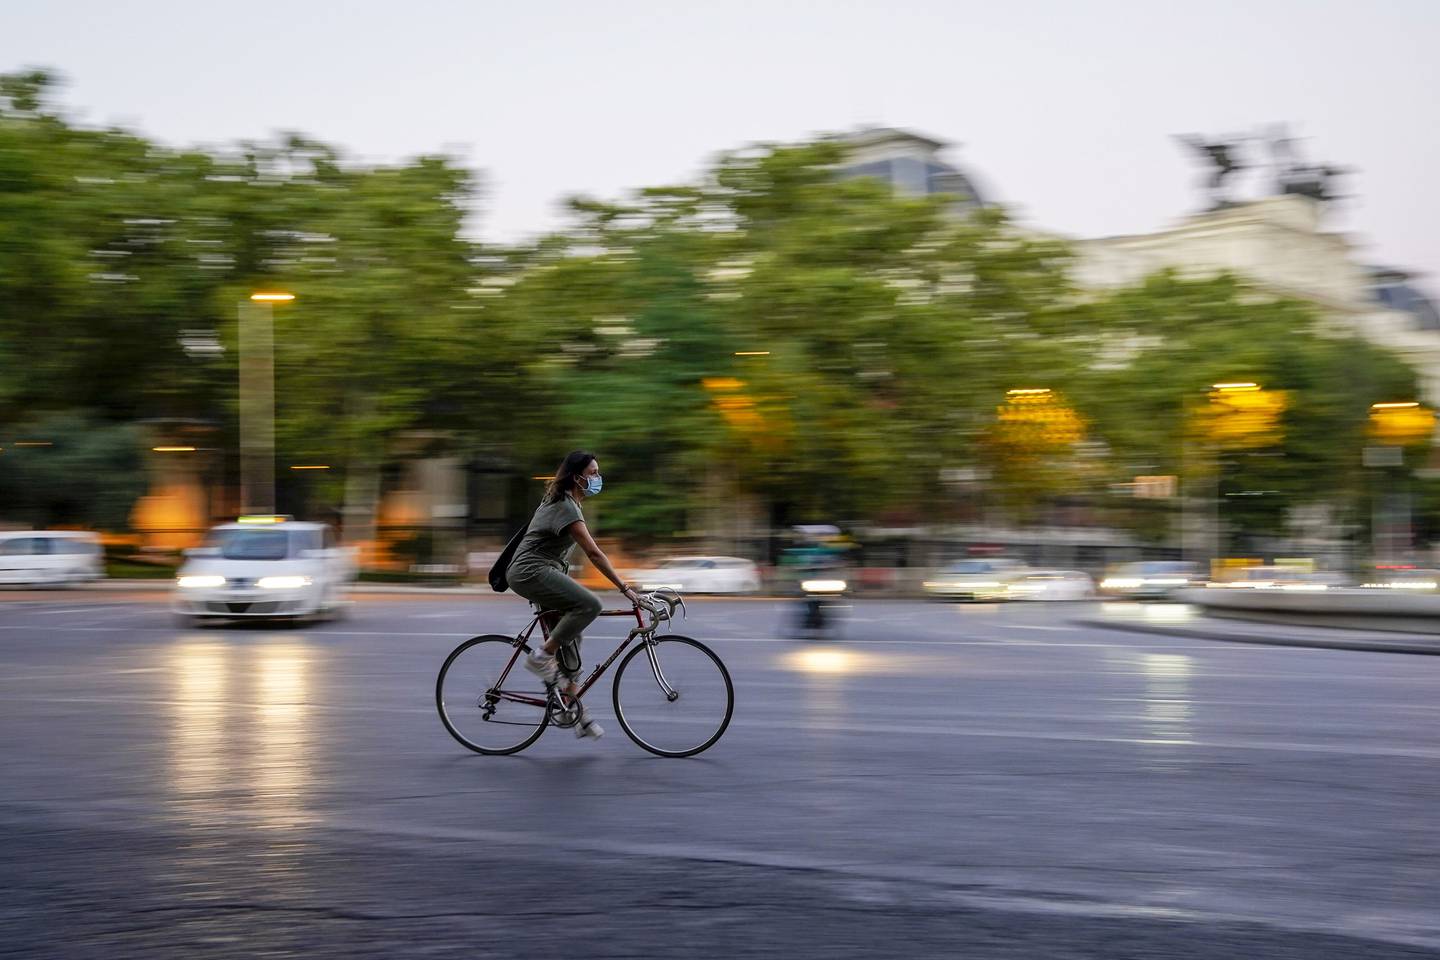 Este tipo de ciudades buscan, en esencia, que las urbes sean más sostenibles y saludables, cubriendo todas las necesidades básicas de una población a máximo 15 minutos caminando o en bicicleta. dfd